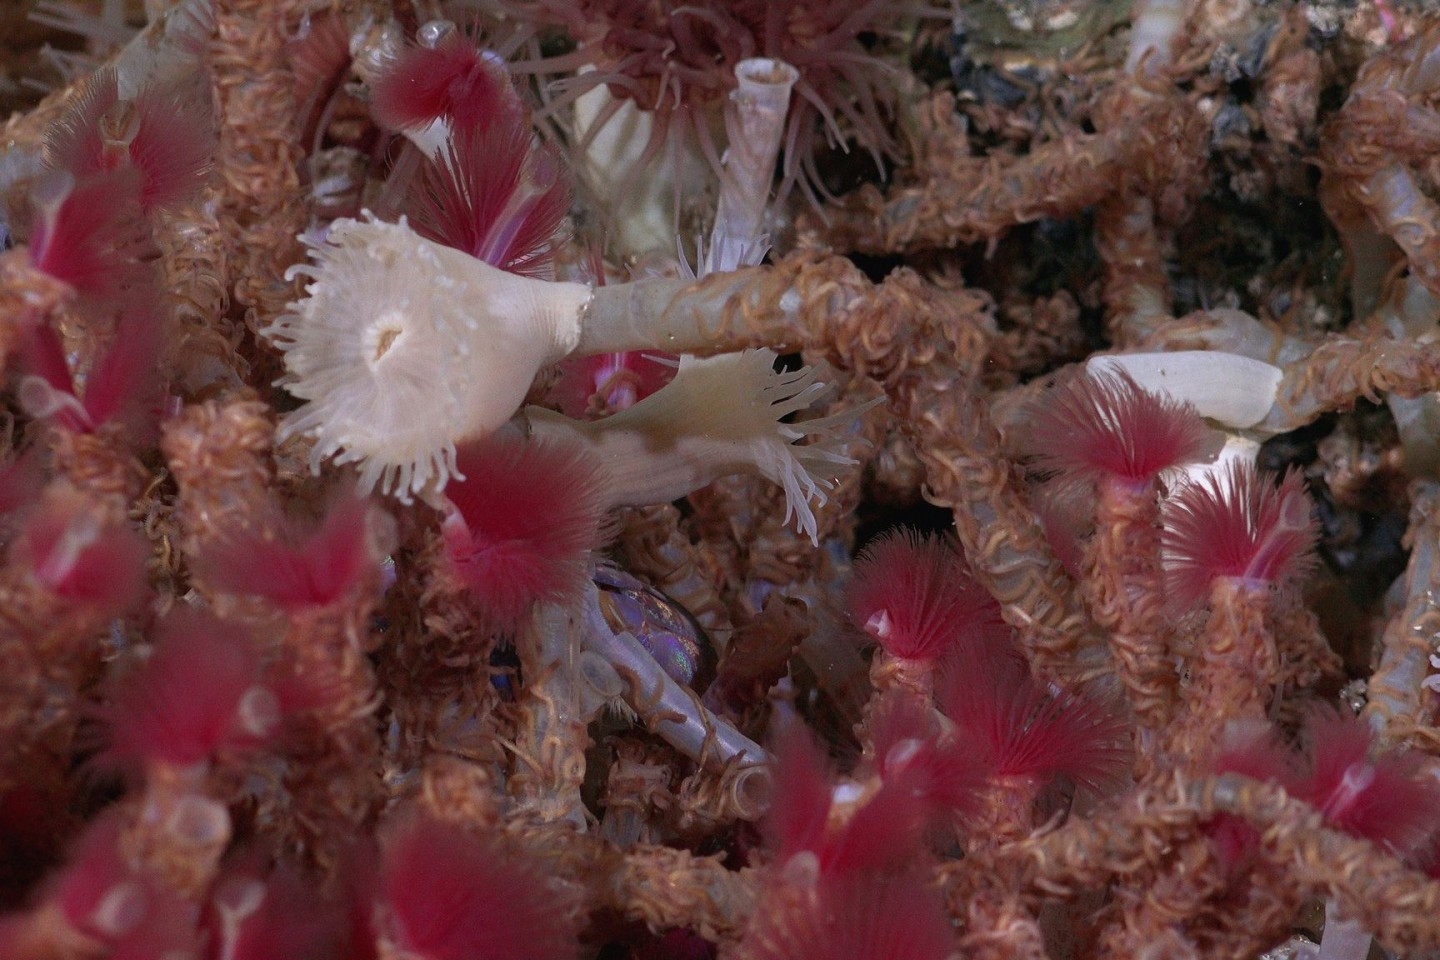 Röhrenwürmer, die bei einem Erkundungstauchgang in 650 Meter Tiefe entdeckt wurden.